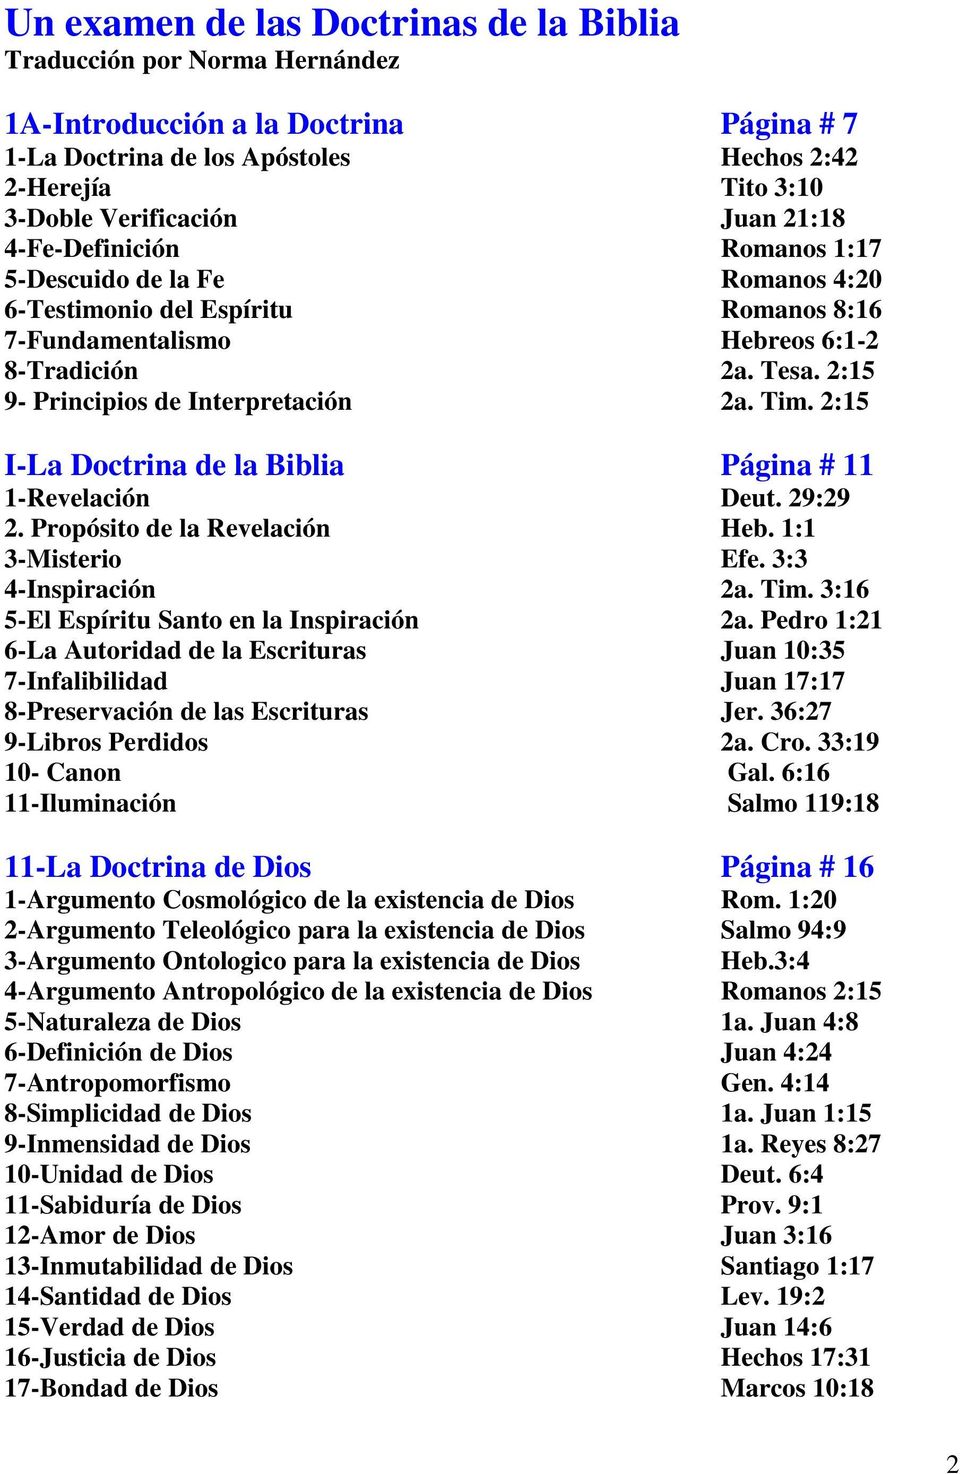 Un Examen De Las Doctrinas De La Biblia Pdf